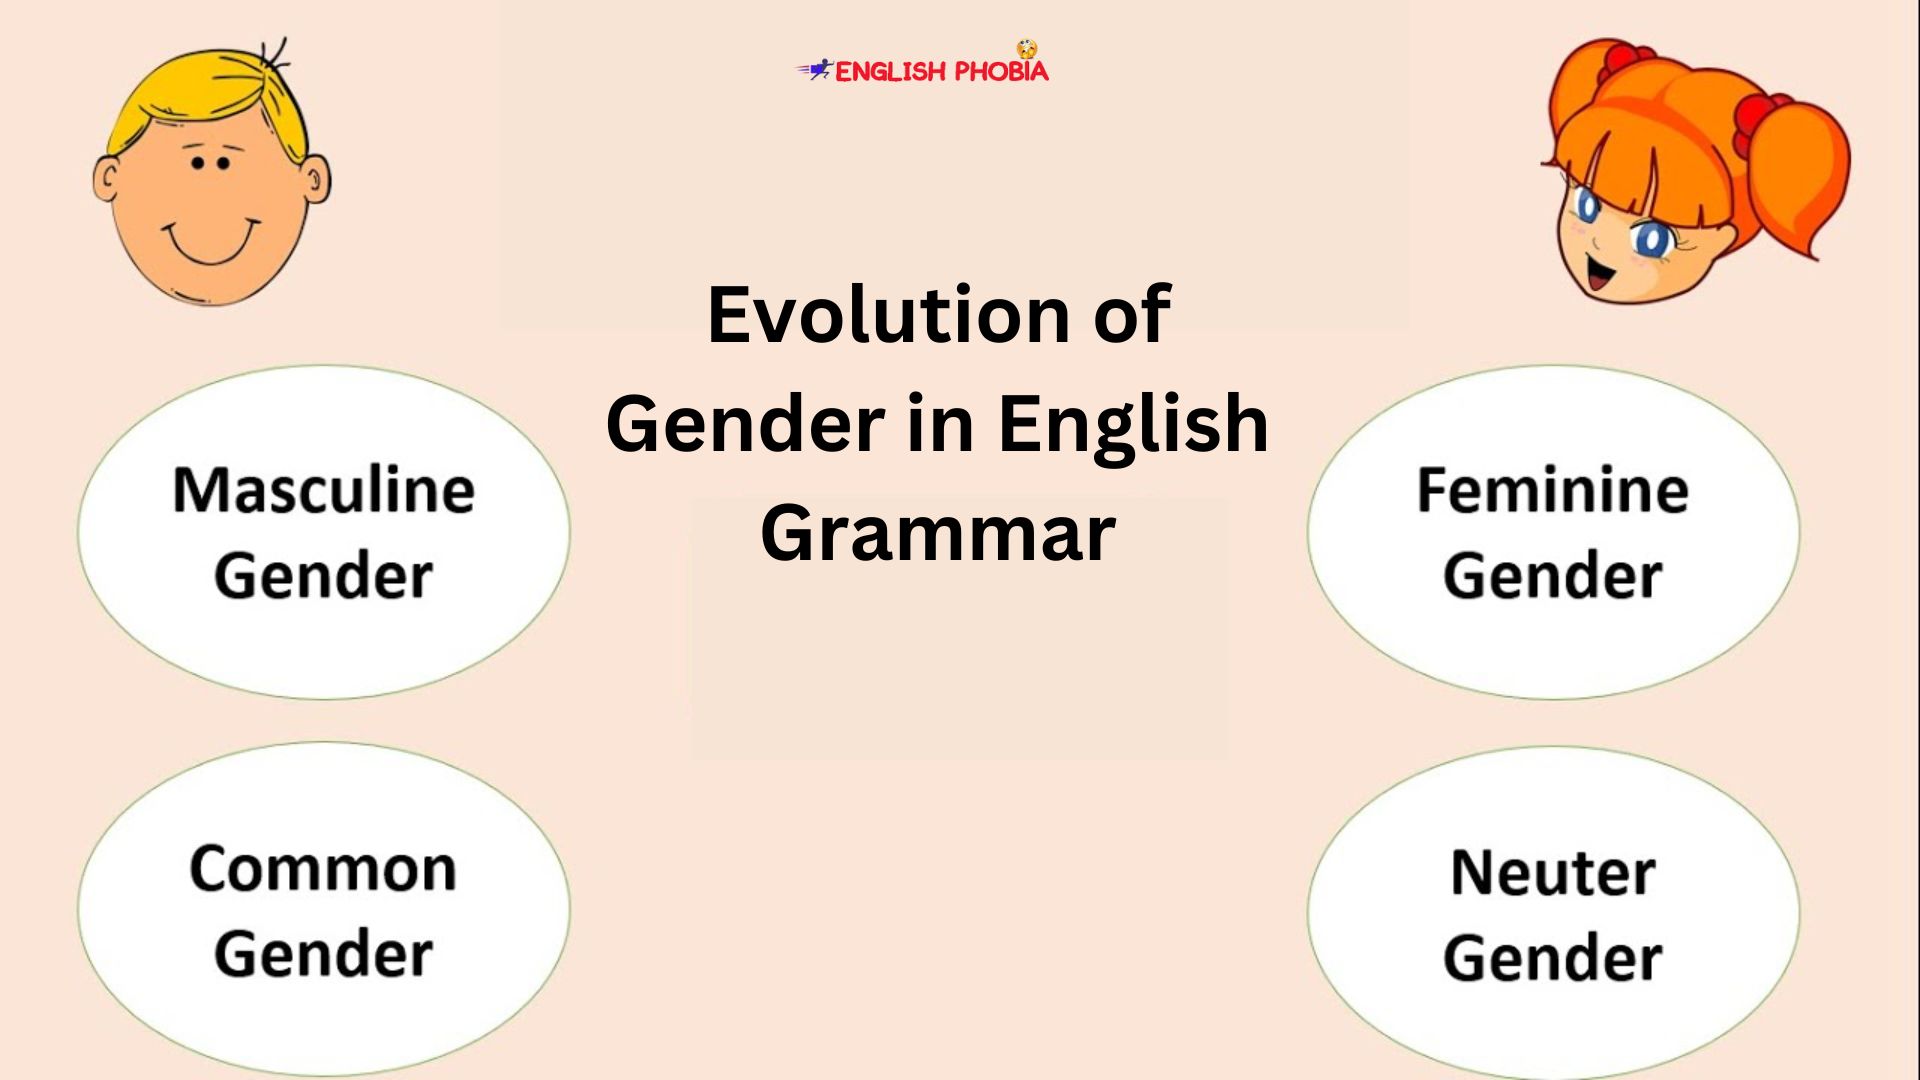 Evolution of Gender in English Grammar